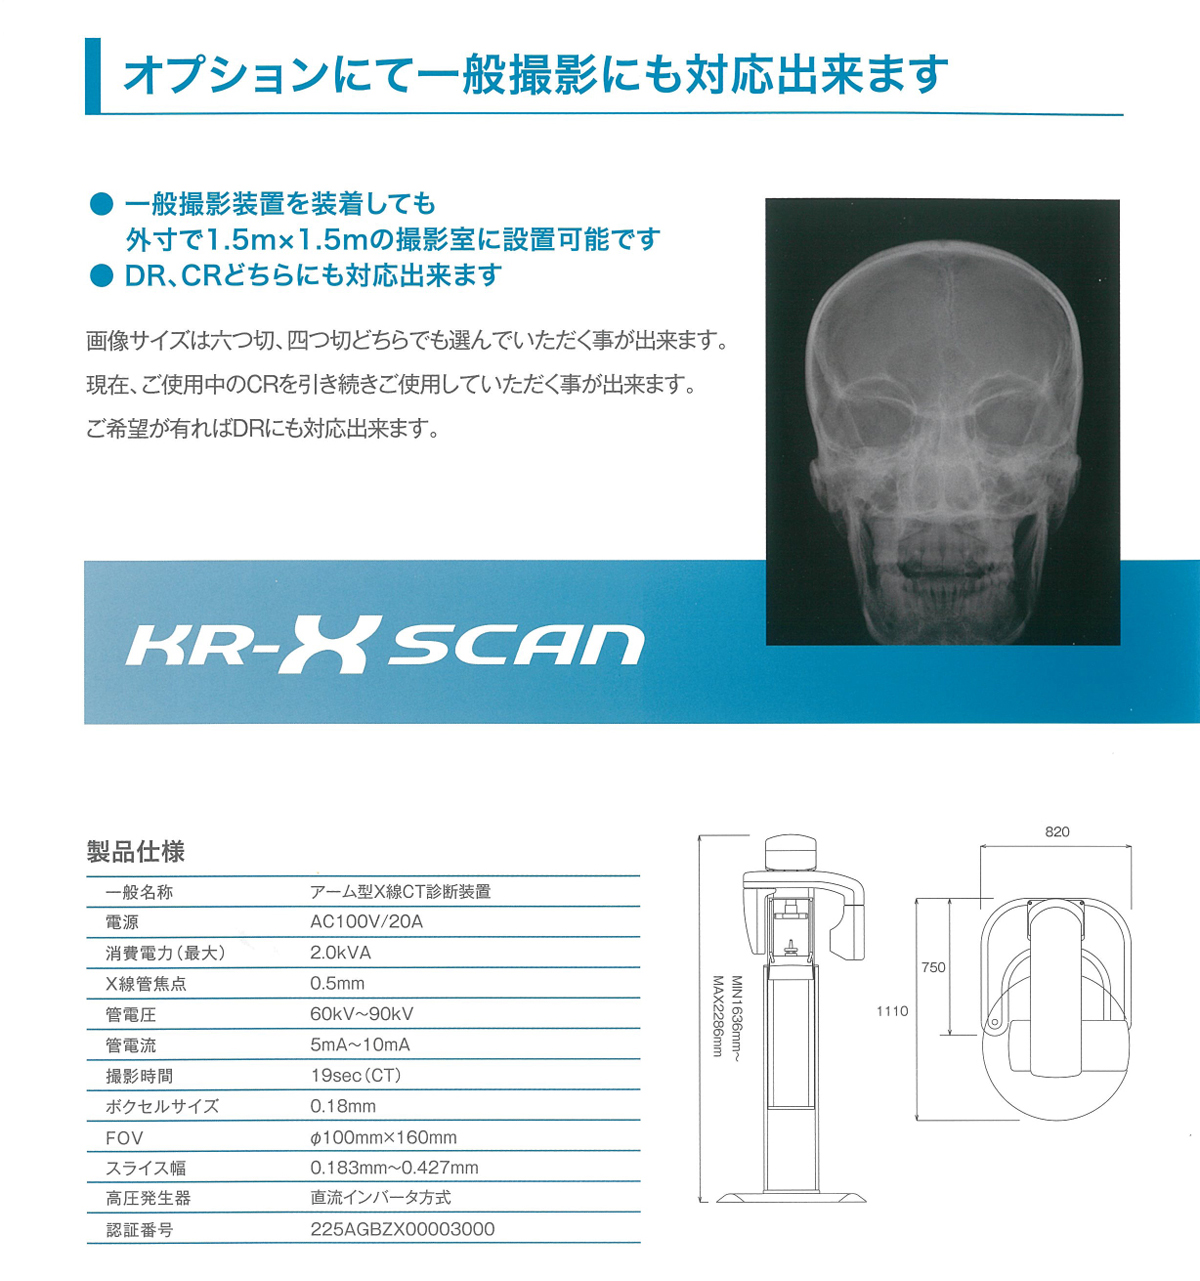 耳鼻科用CT(KR-X SCAN)の仕様、システム構成、寸法図